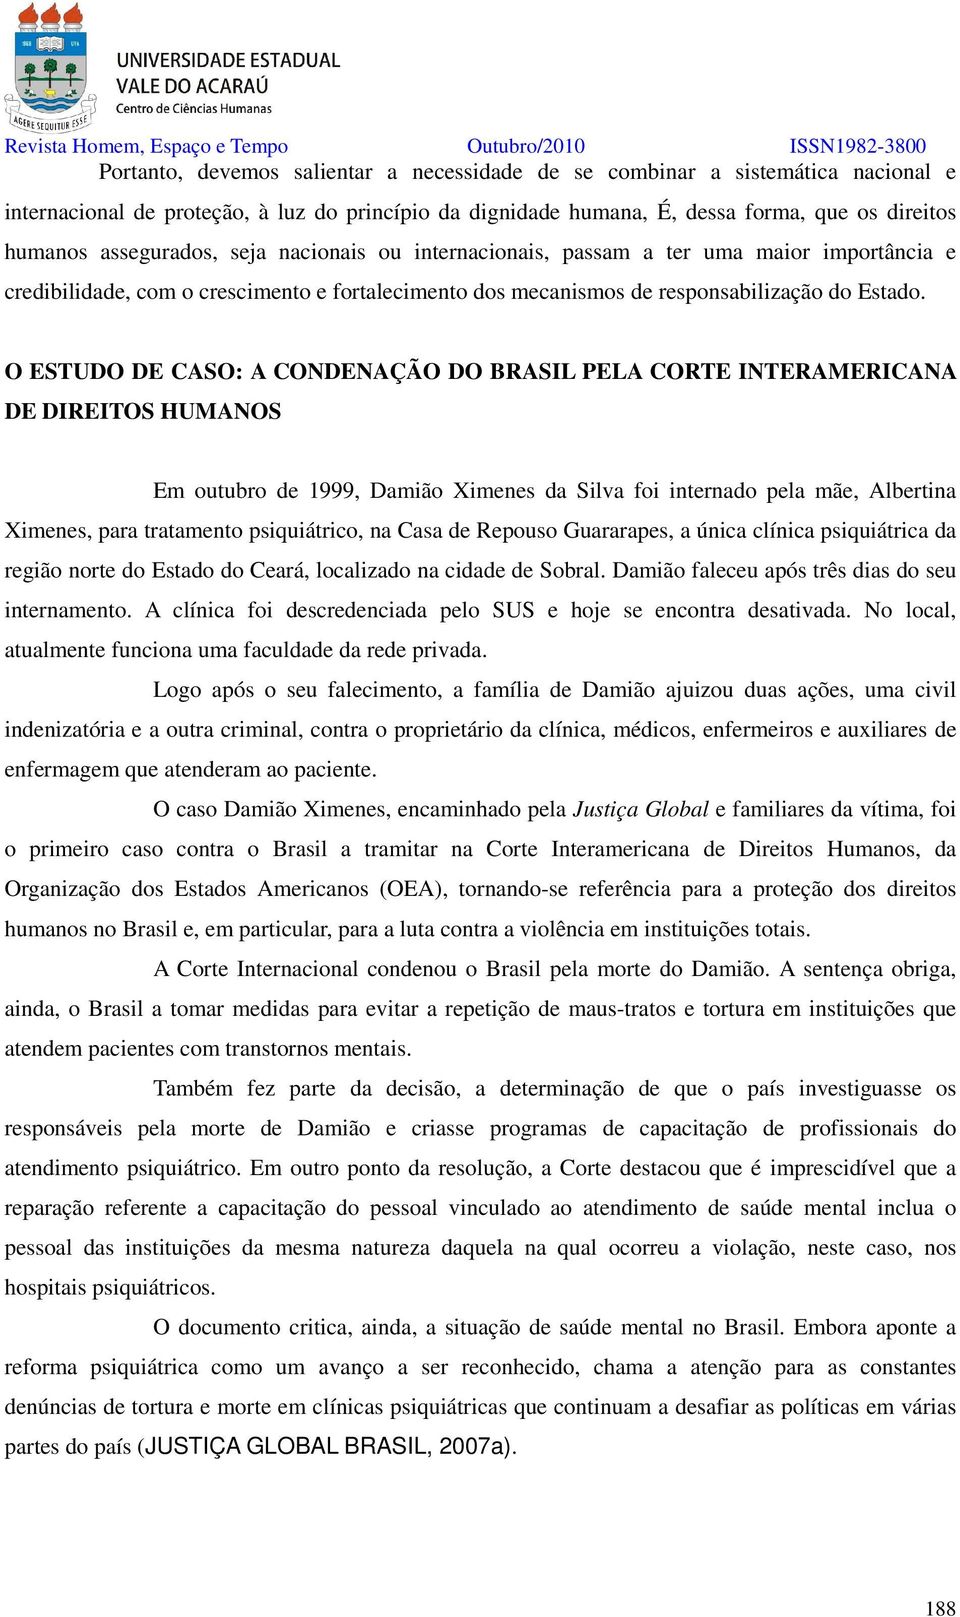 O ESTUDO DE CASO: A CONDENAÇÃO DO BRASIL PELA CORTE INTERAMERICANA DE DIREITOS HUMANOS Em outubro de 1999, Damião Ximenes da Silva foi internado pela mãe, Albertina Ximenes, para tratamento